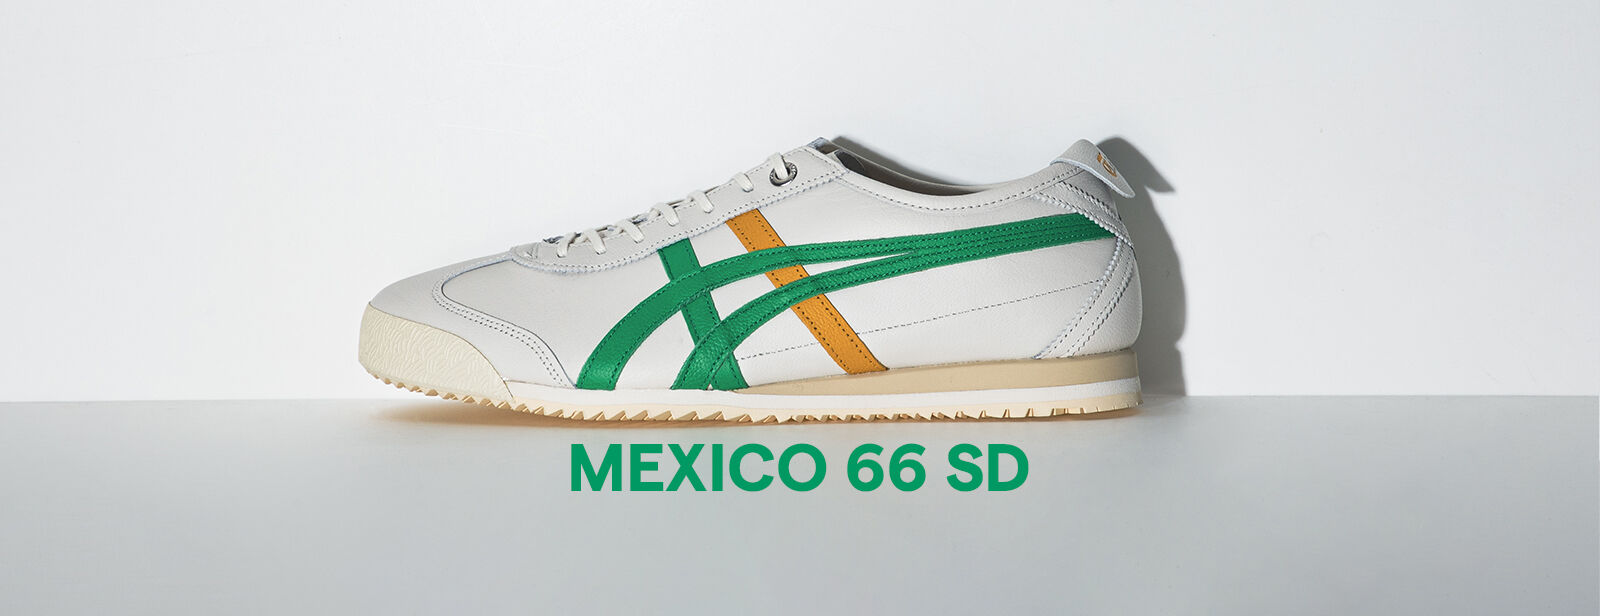 Mexico 66 SD Collection | ASICS